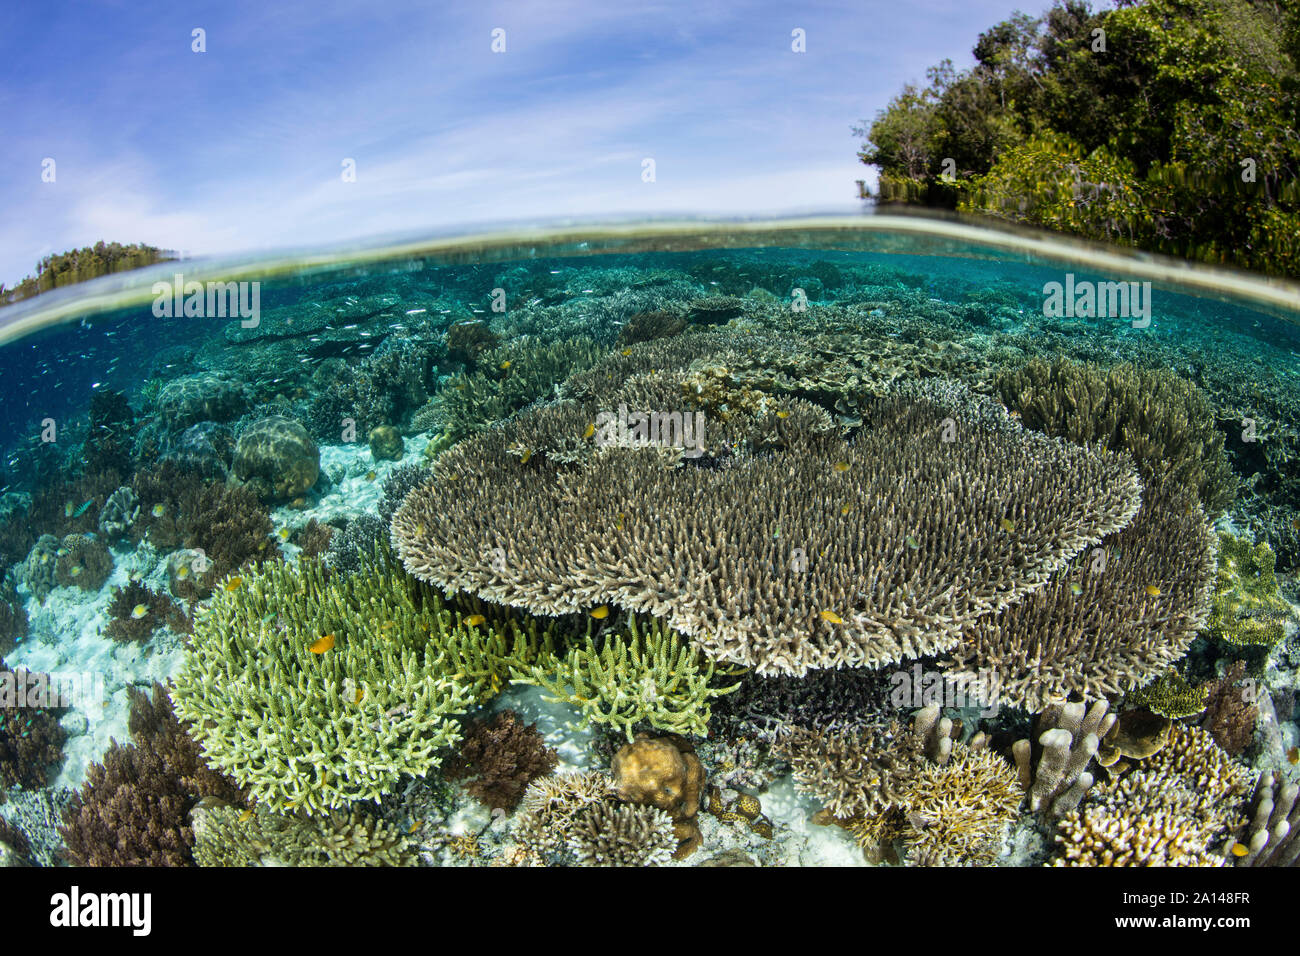 Un beau récif de corail se développe dans une région éloignée de Raja Ampat, en Indonésie. Banque D'Images